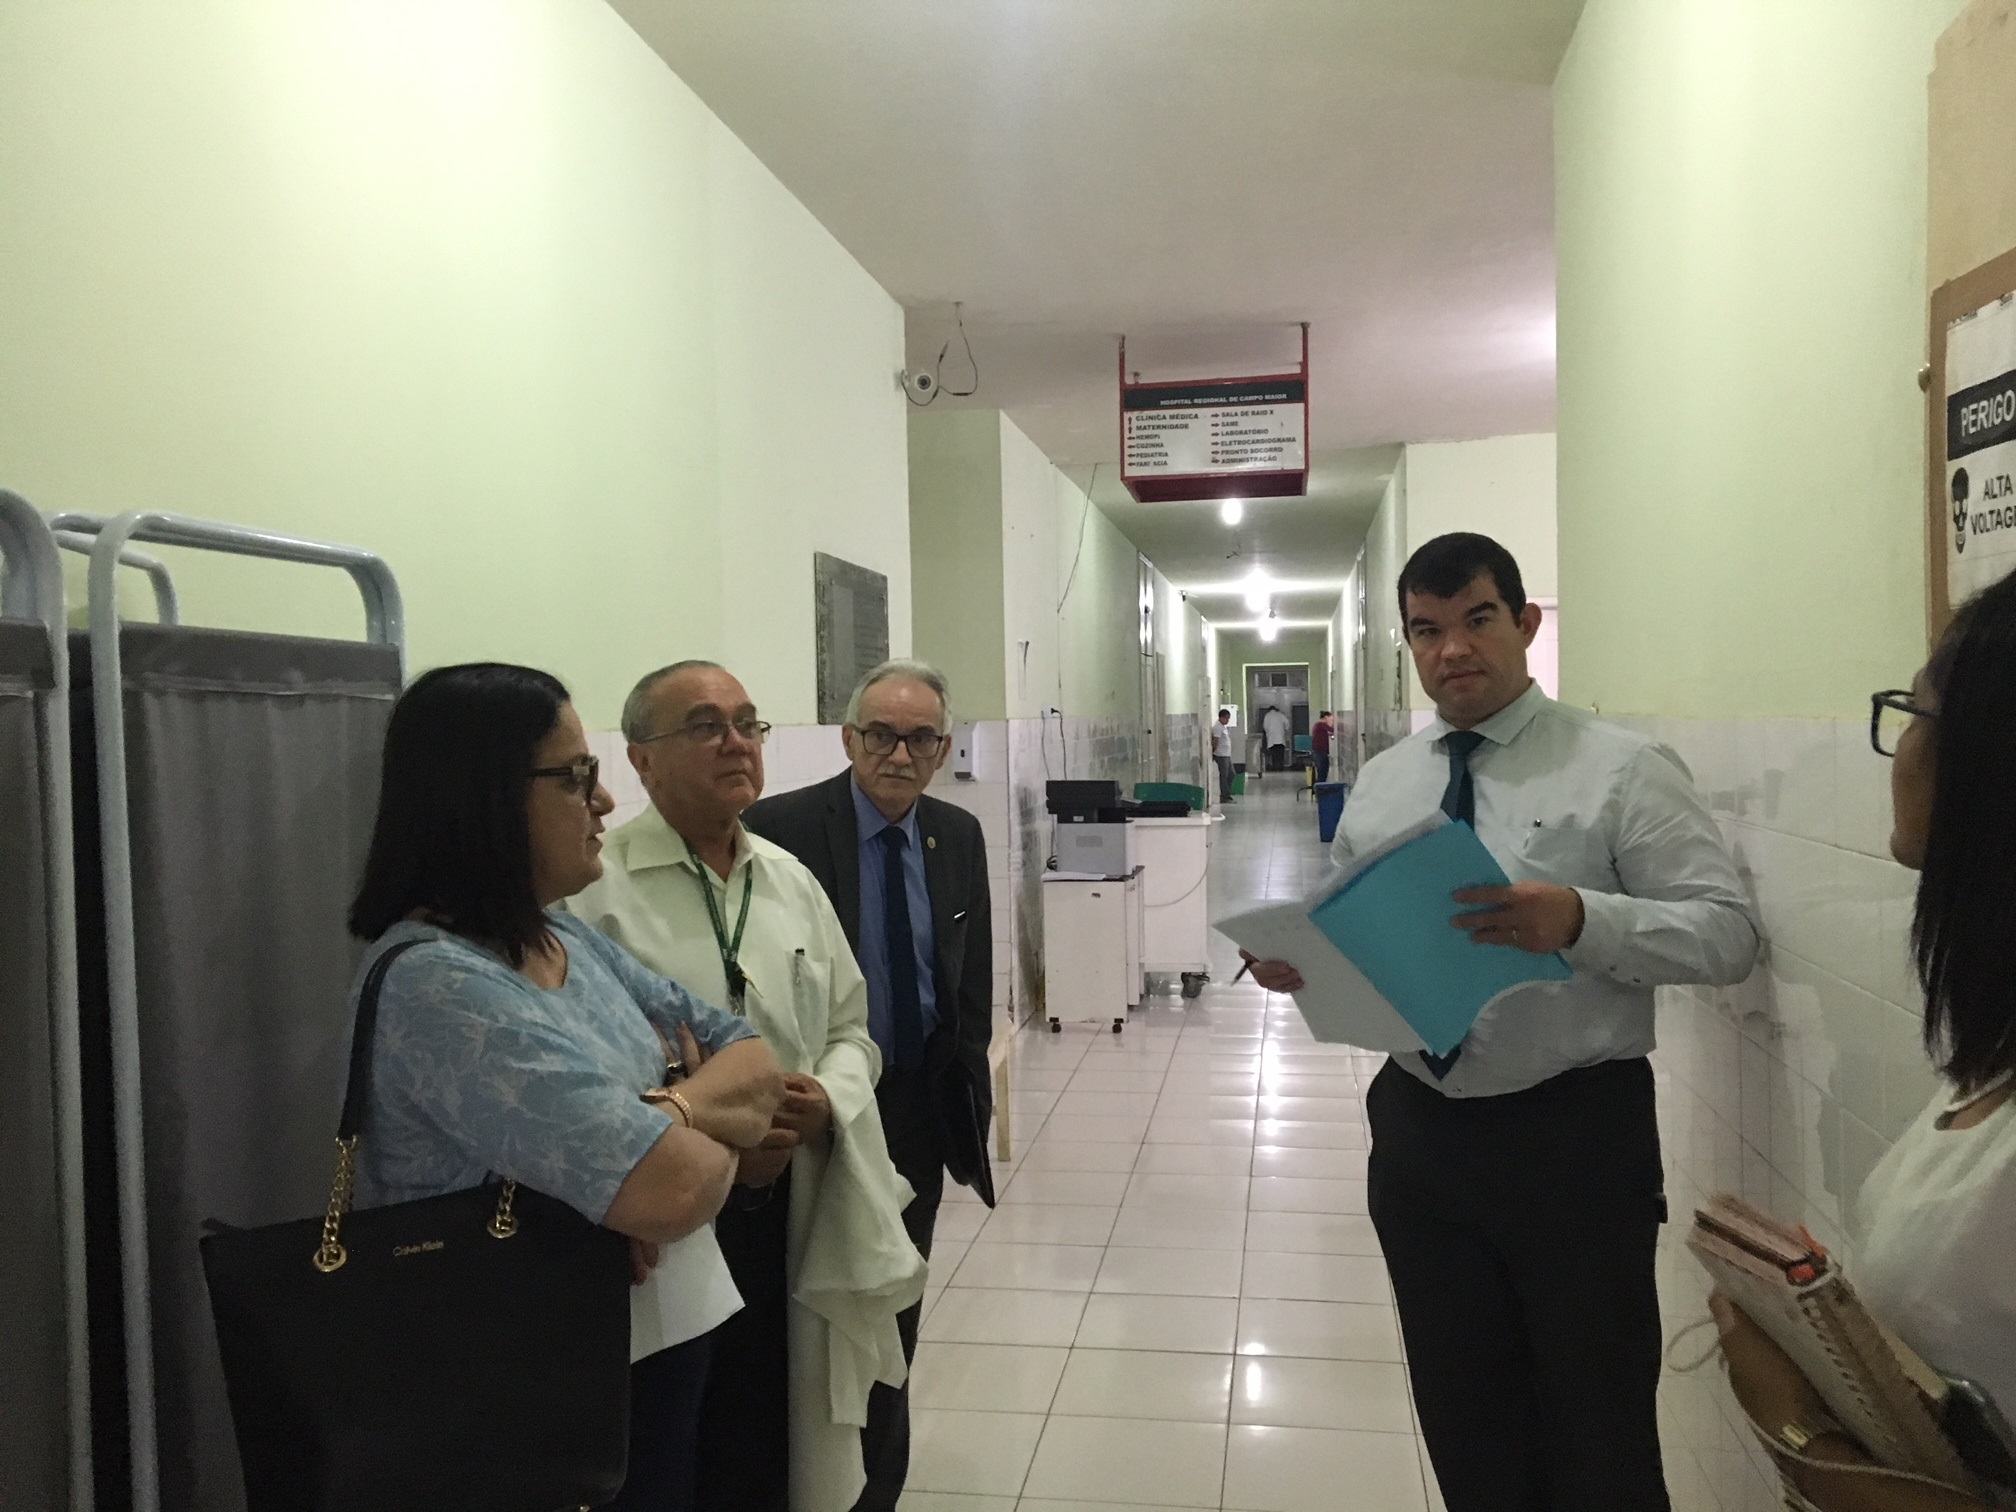 A fiscalização contou com a participação de membros da diretoria e do corpo técnico do Conselho Regional do Estado do Piauí, além do promotor de Justiça da Comarca de Campo Maior, Maurício Gomes de Sousa